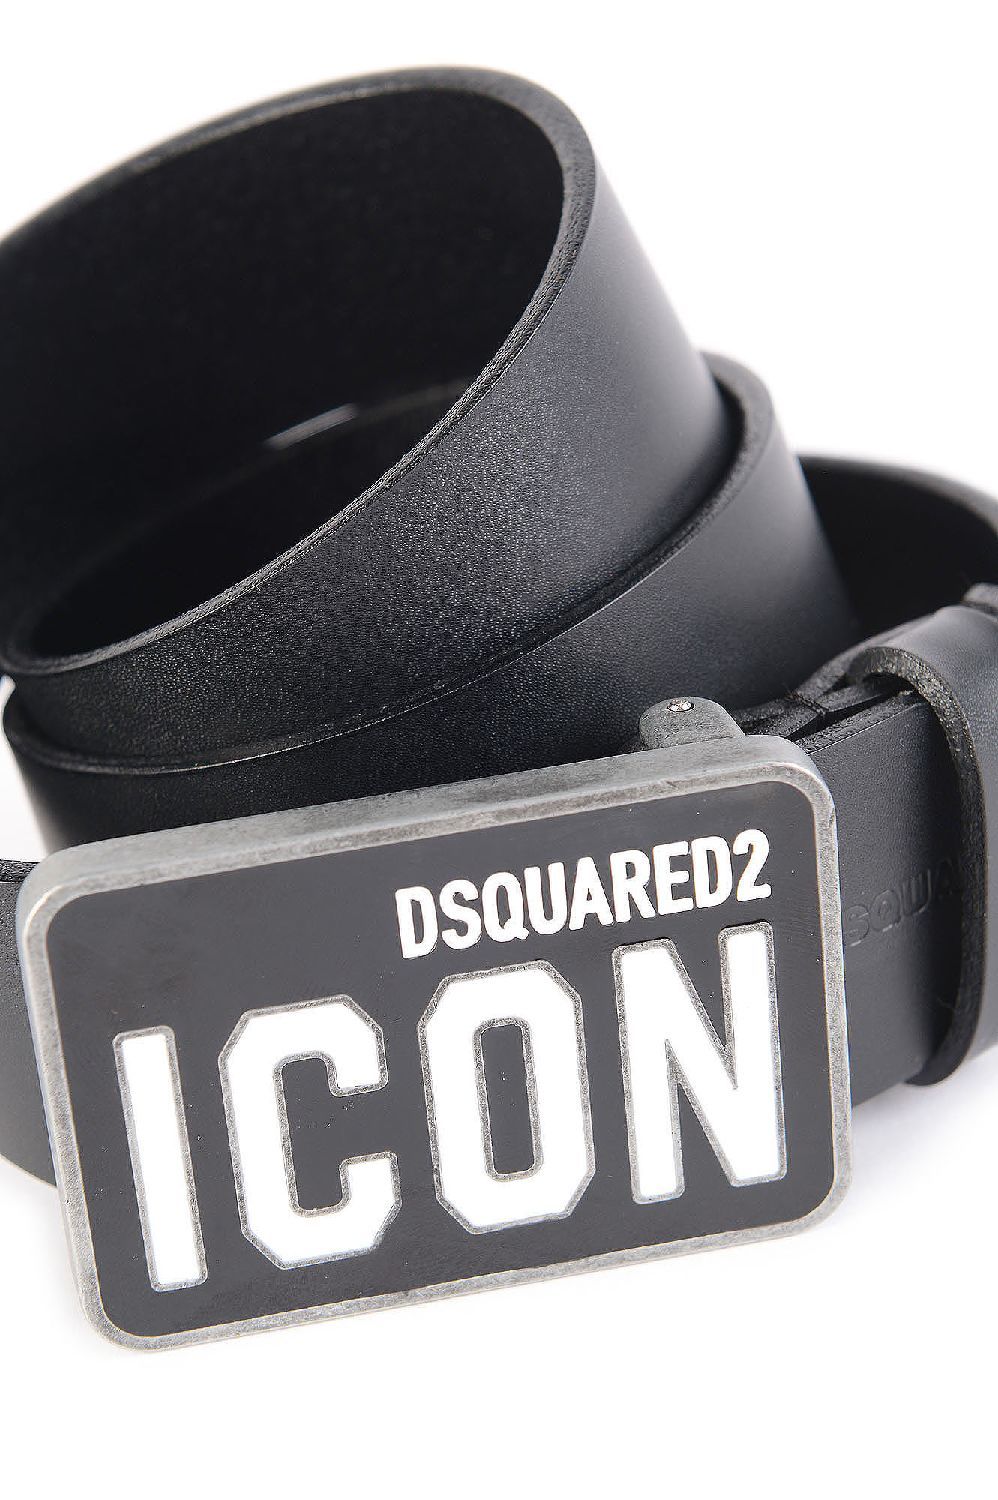 DSQUARED2 Icon belt black online kopen bij Kindermode en Tienermode. Prisca junior